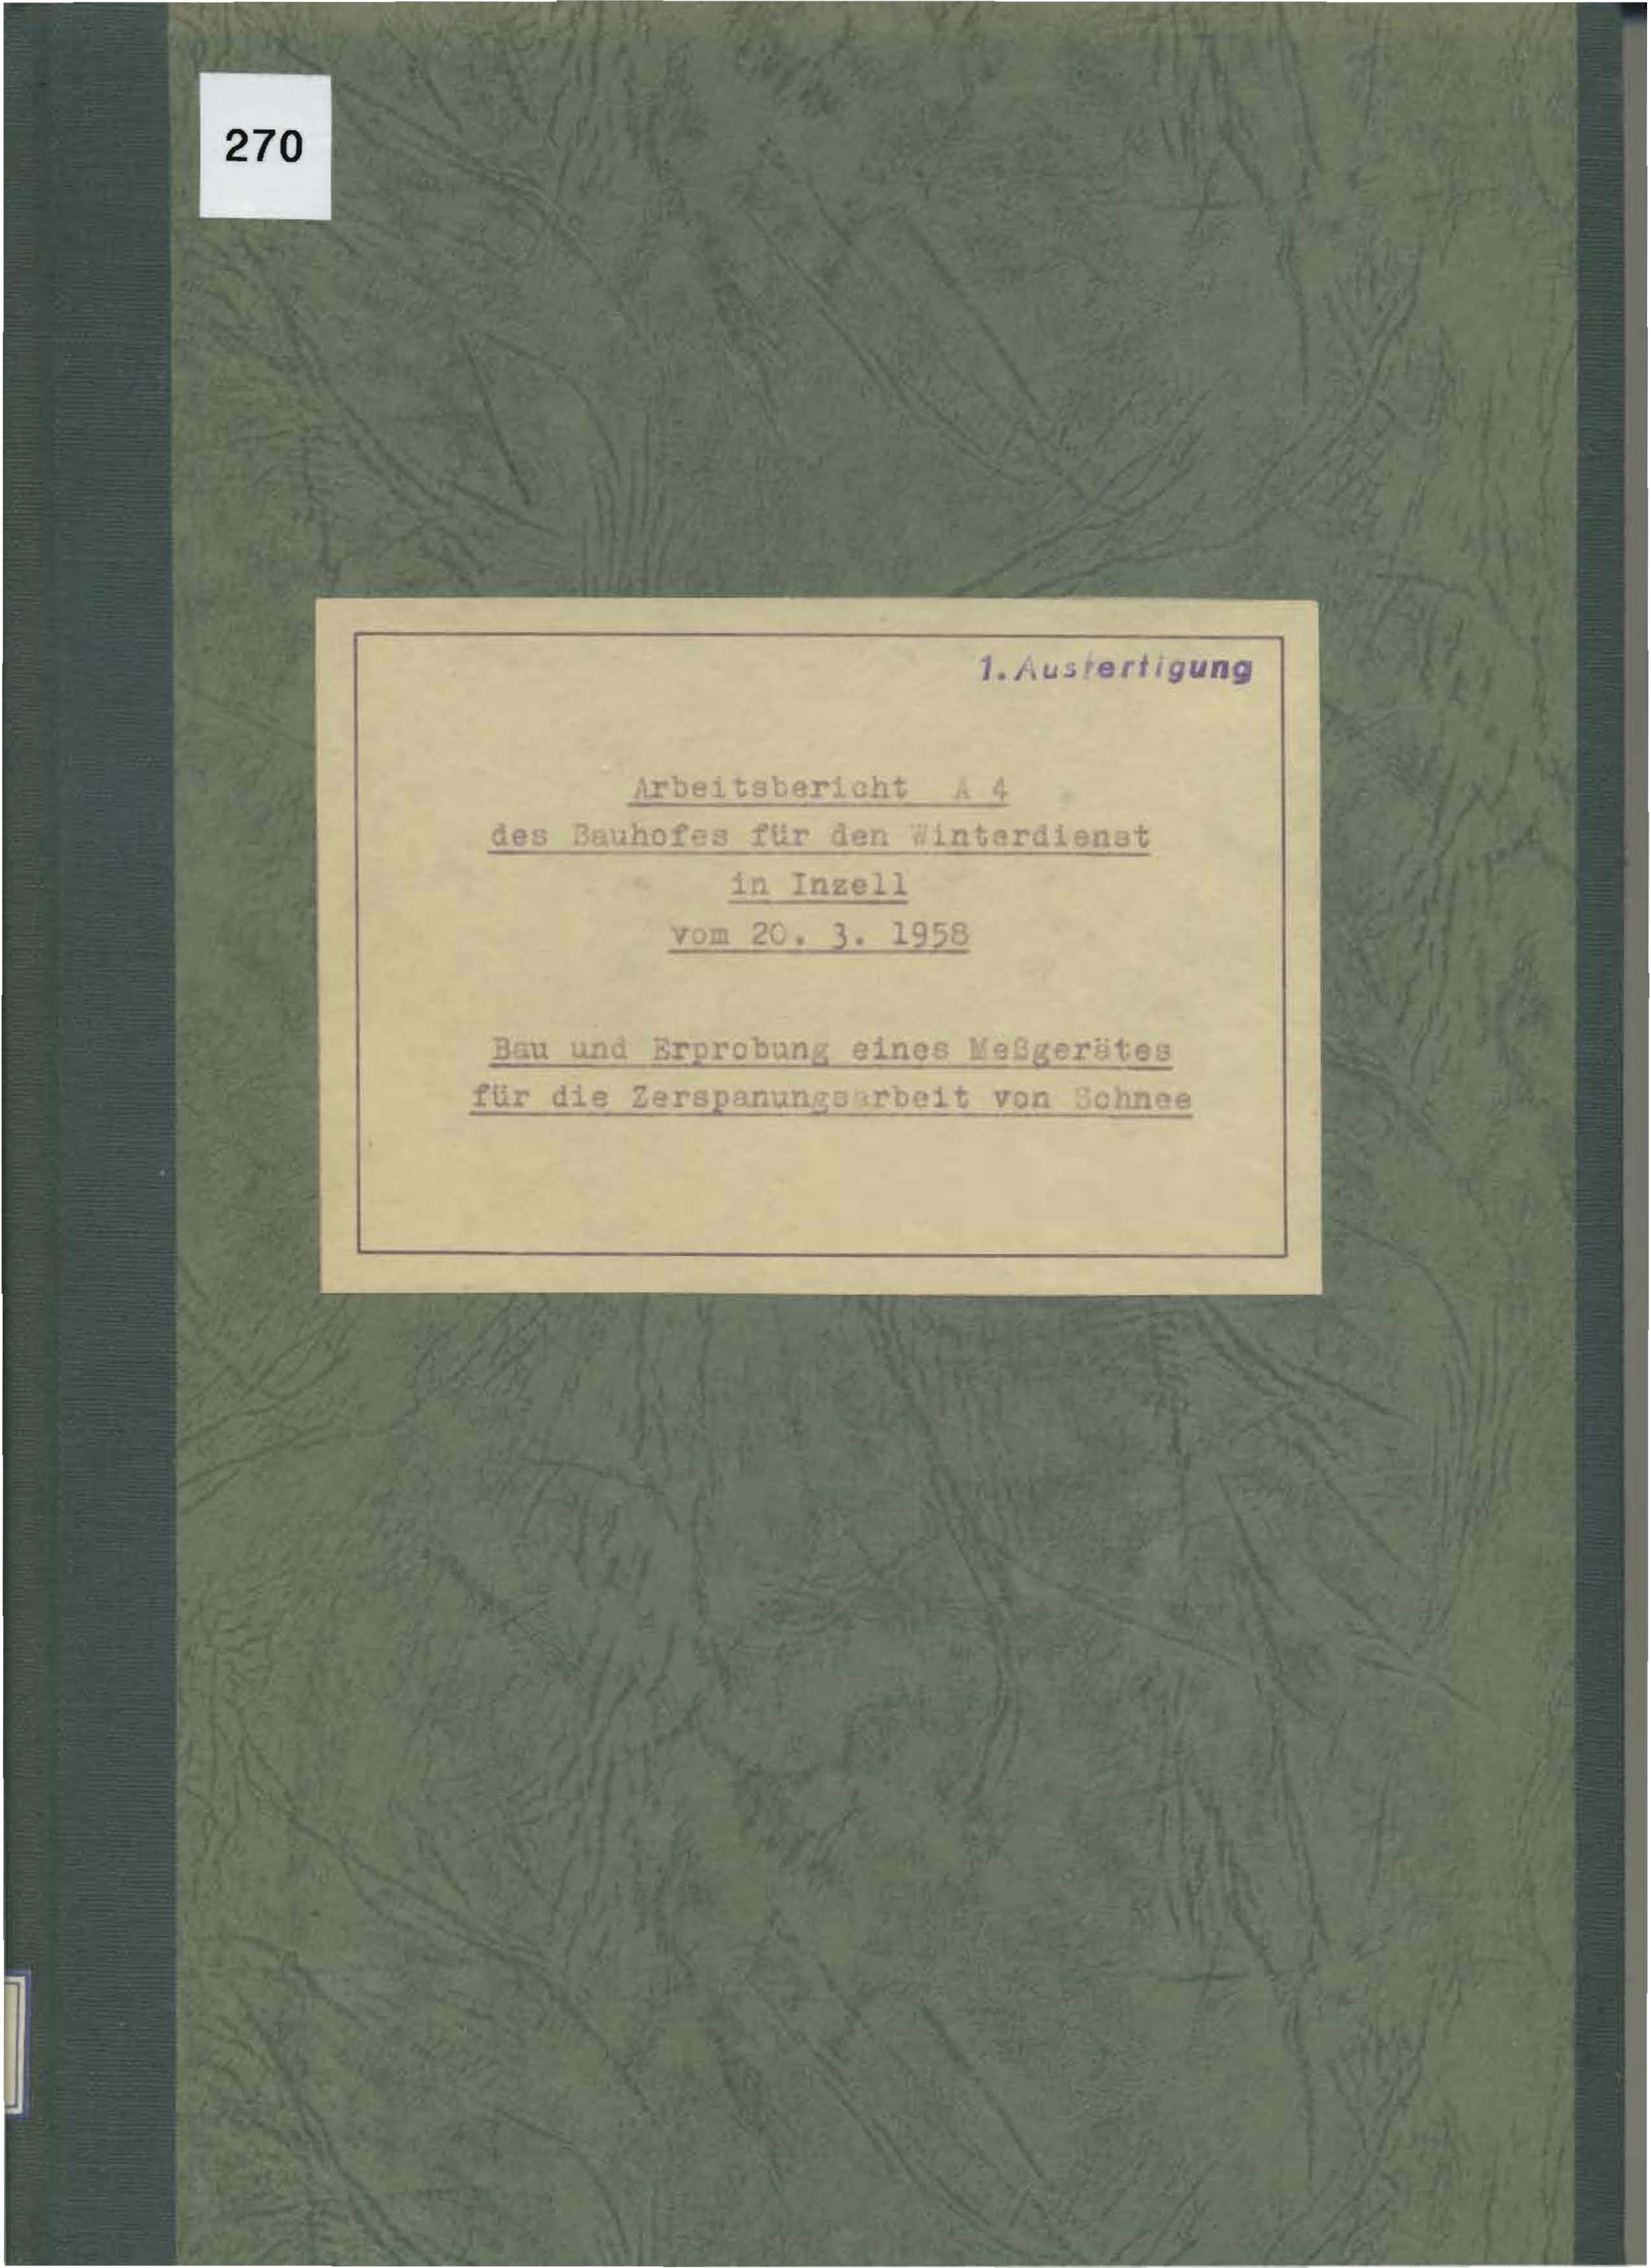 Arbeitsbericht A4 des Bauhofes für den Winterdienst in Inzell vom 20. 3.1958